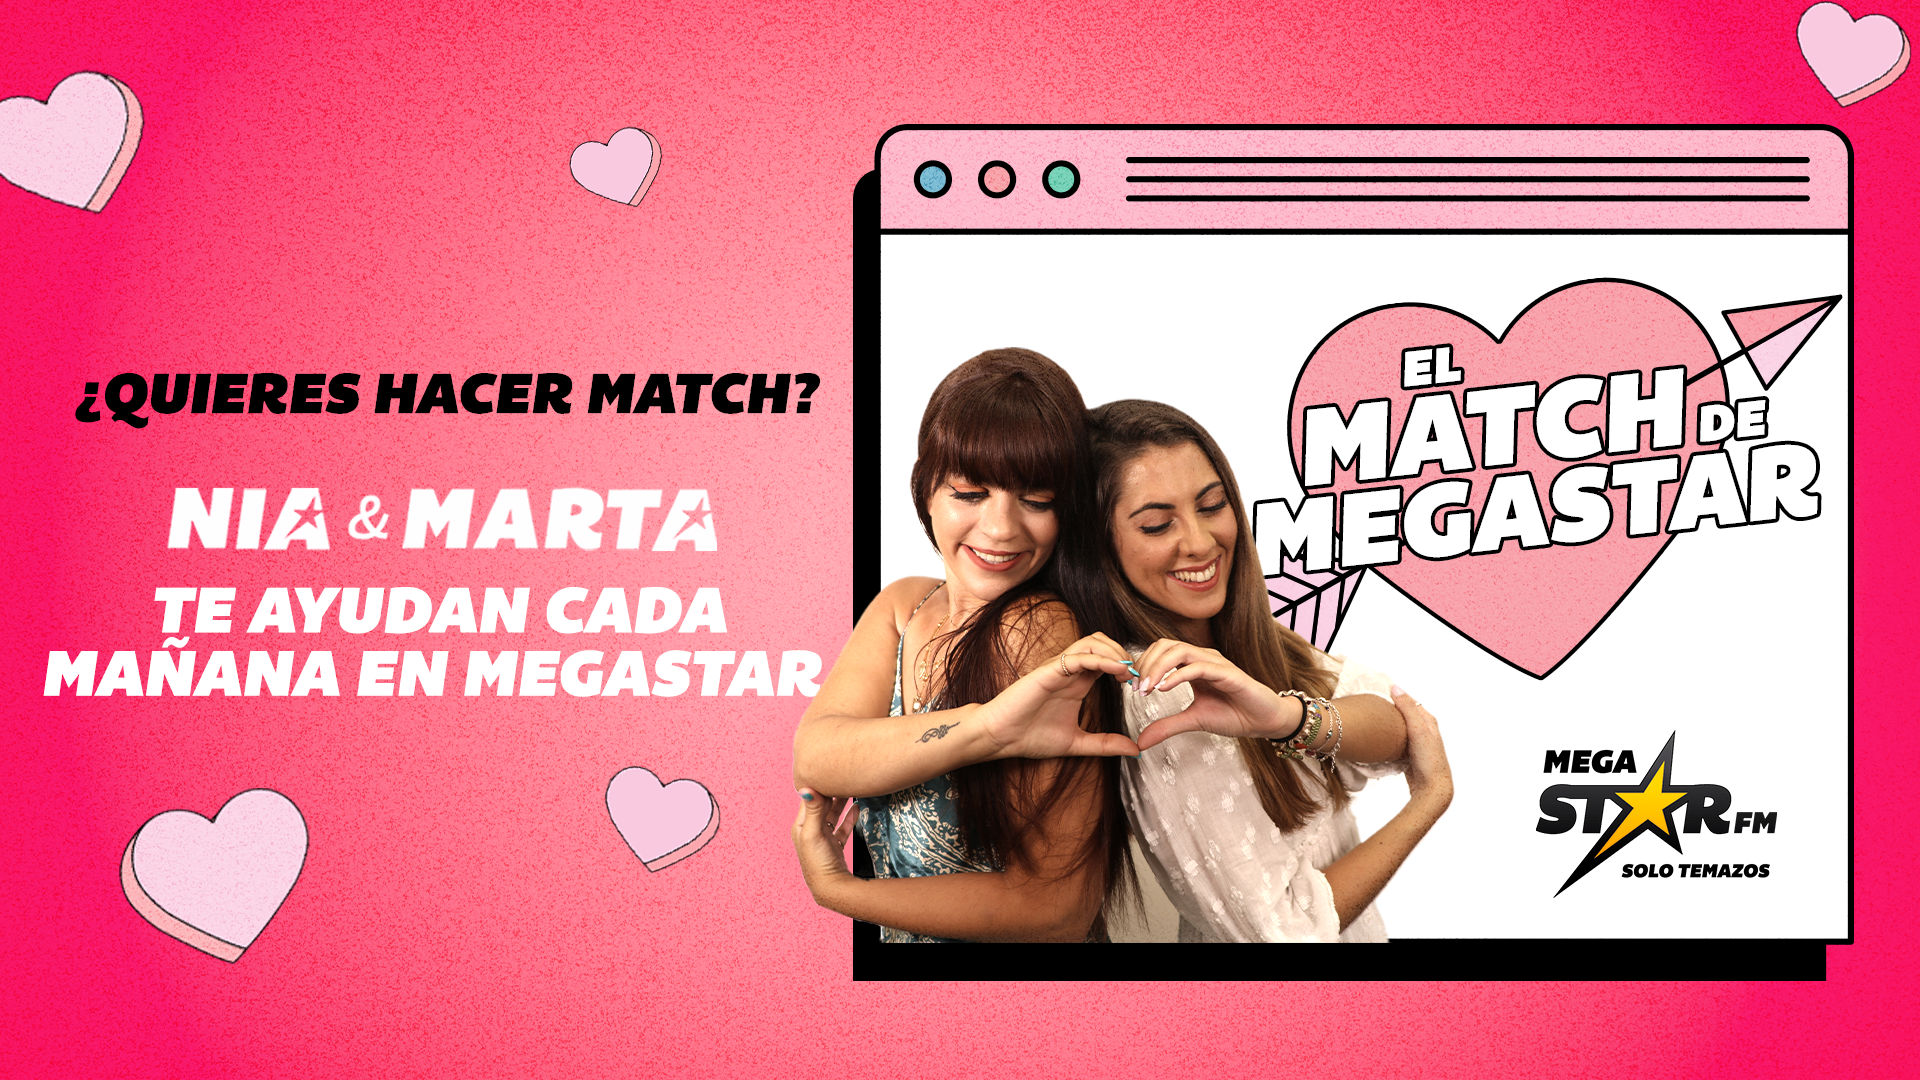 'El Match de MegaStar': ¿Habrán sido compatibles los candidatos de este lunes?